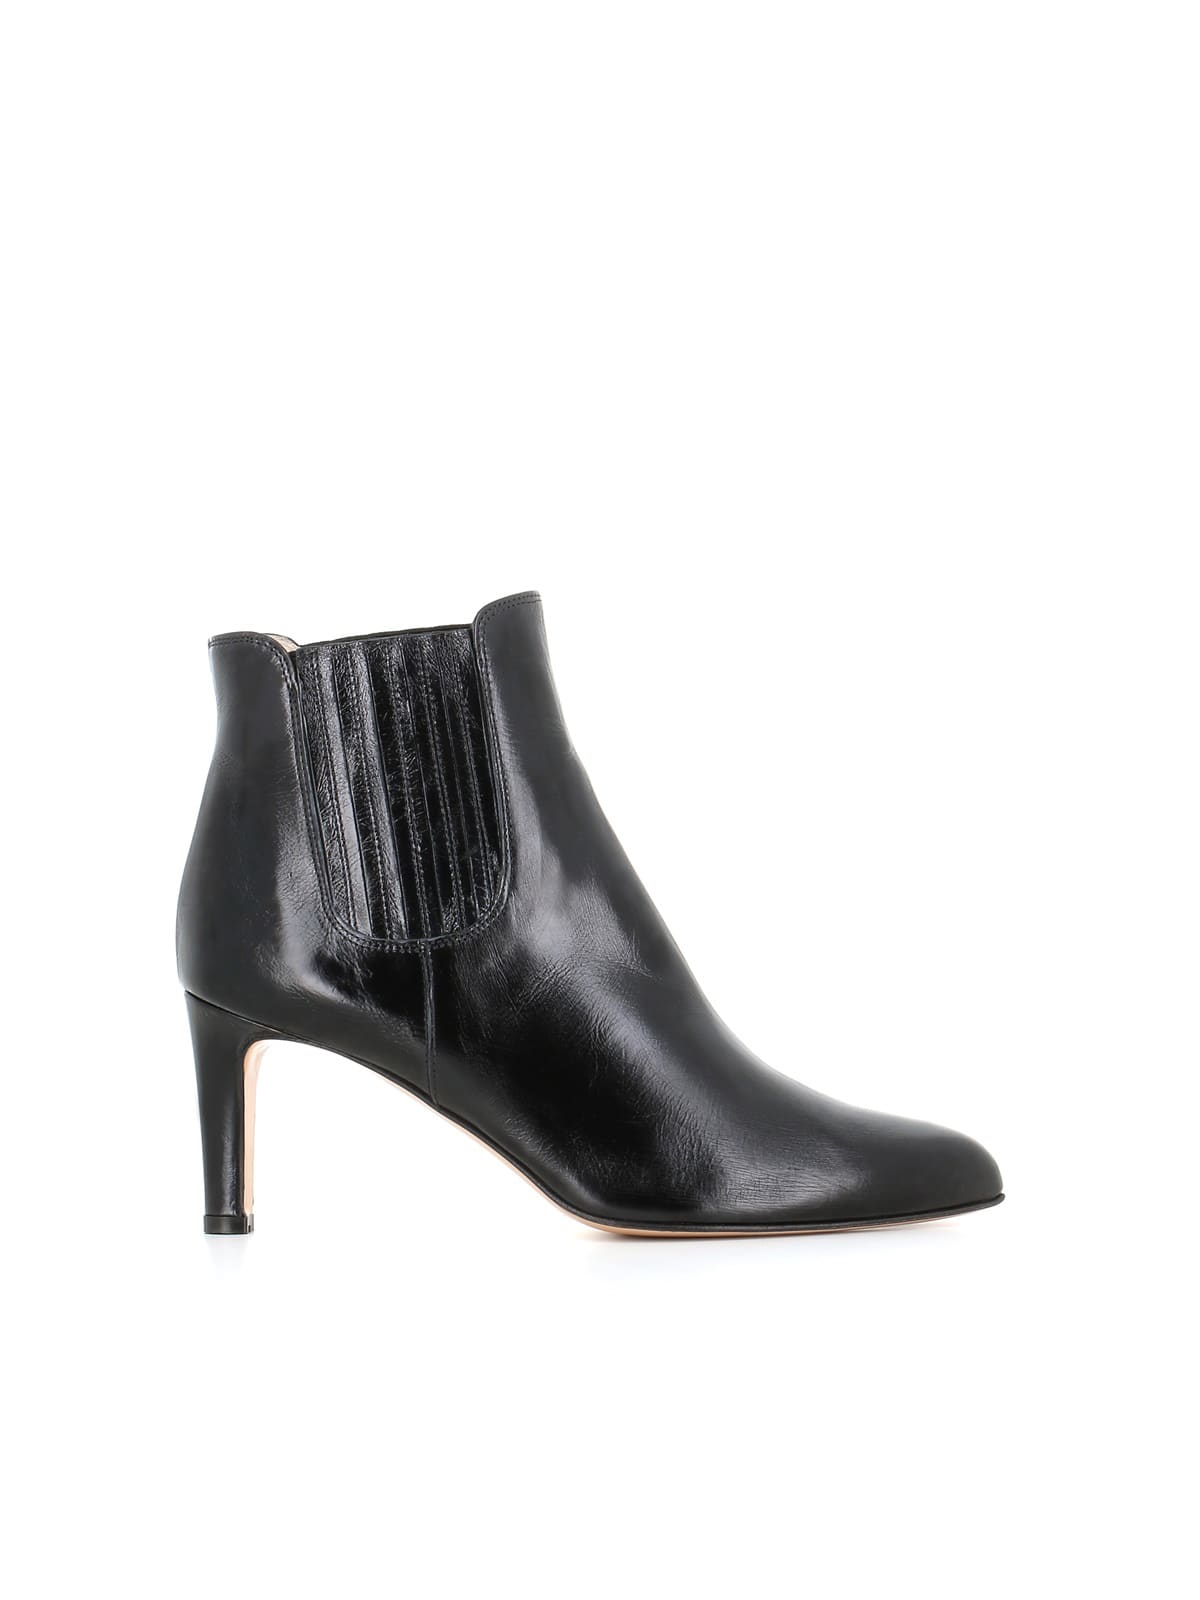 Antonio Barbato Ankle-boots 4813 76 170 In Black